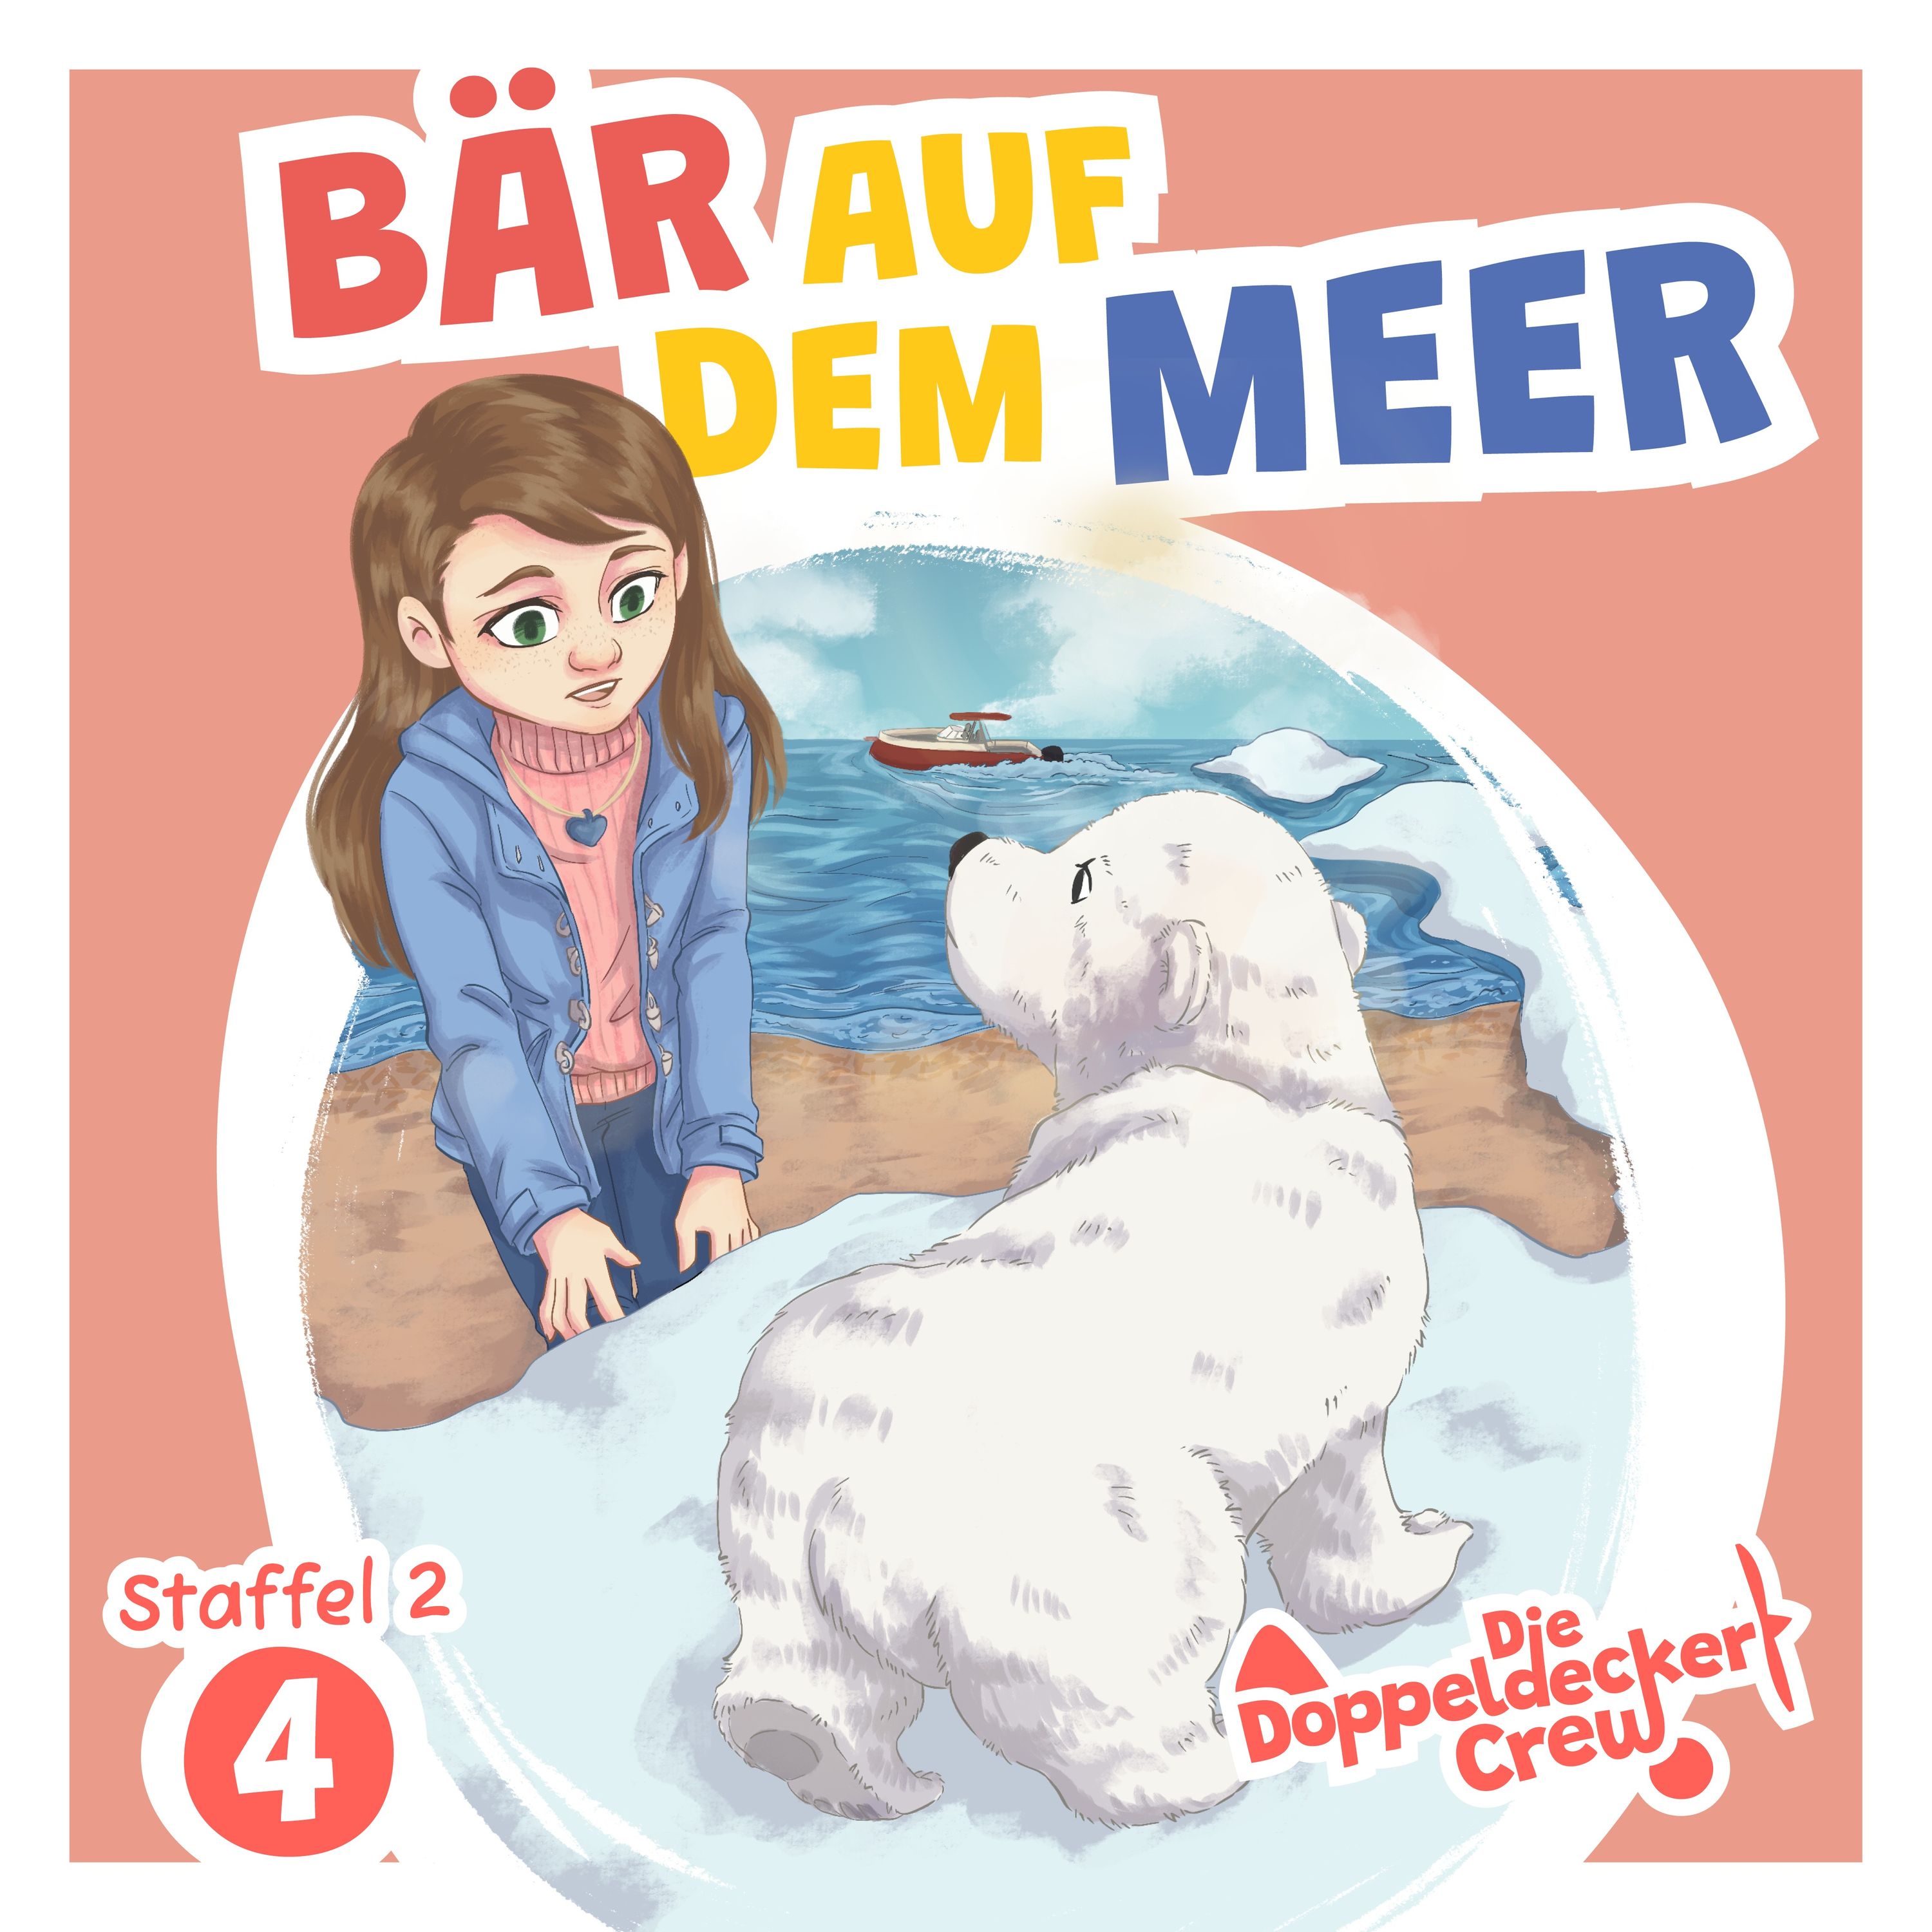 Island 4: Bär auf dem Meer (3/3) | Die Doppeldecker Crew | Hörspiel für Kinder (Hörbuch)